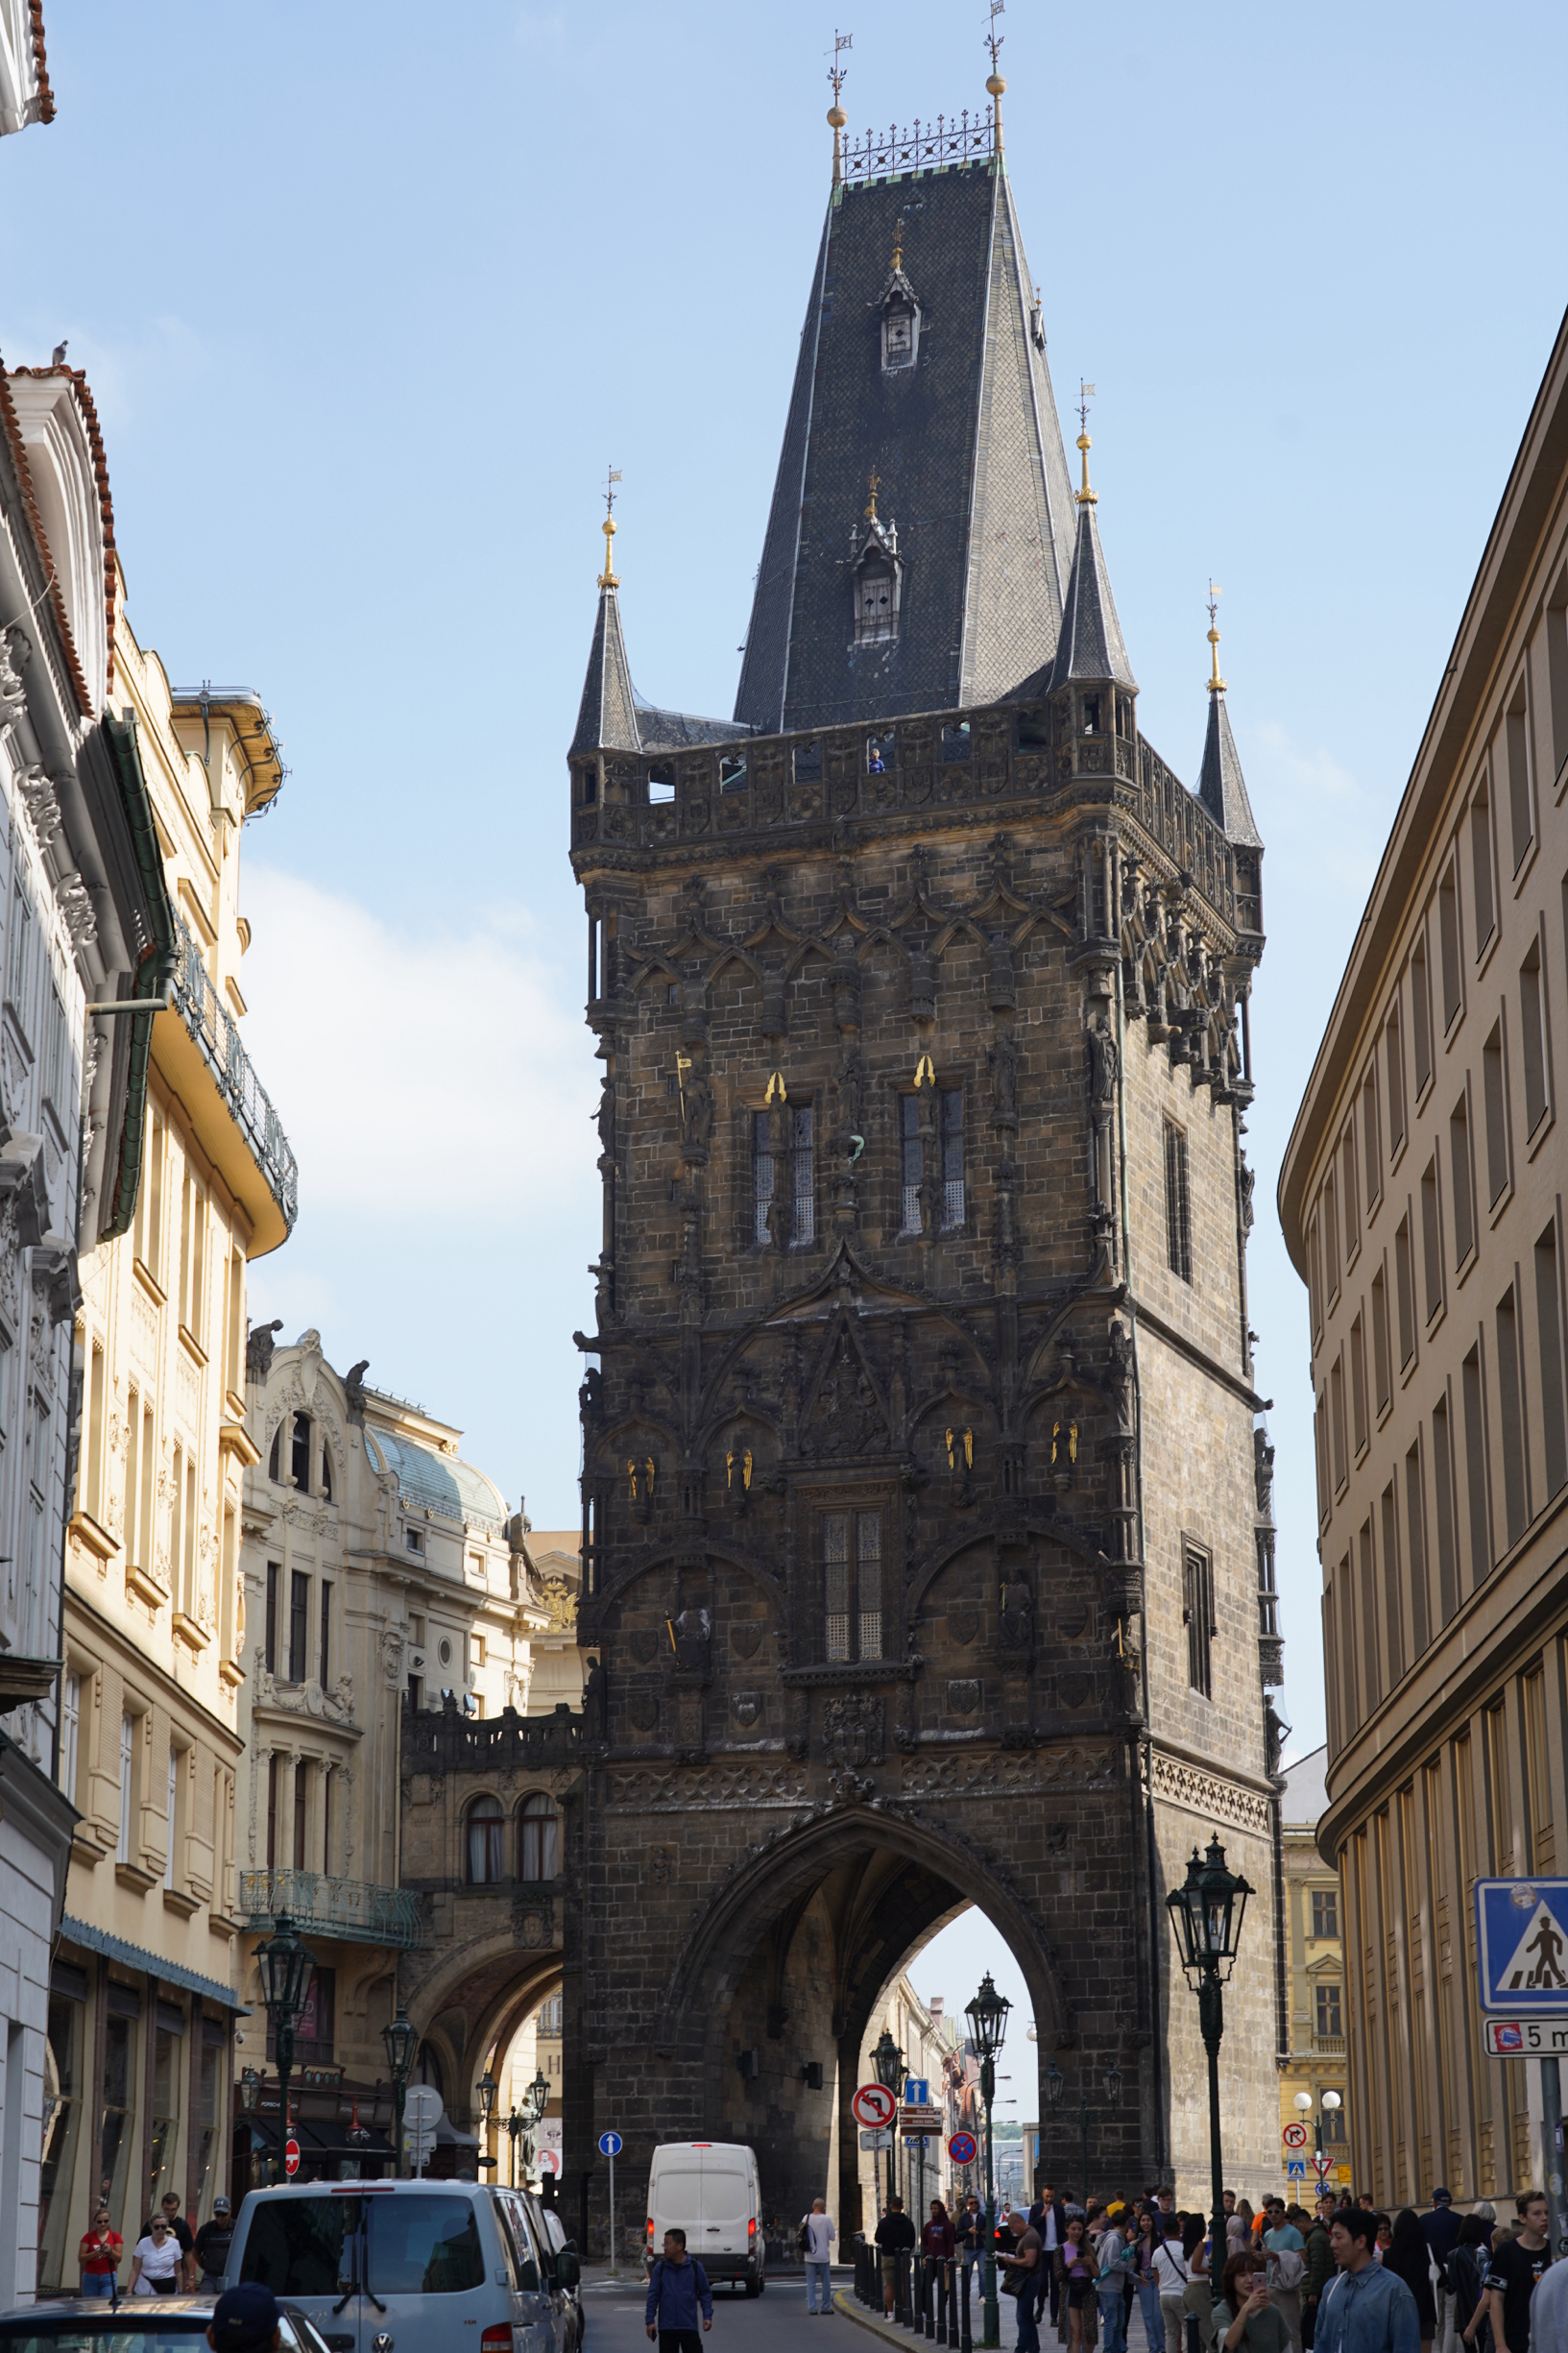 布拉格城堡内有三个庭院、几条古老街巷、画廊、花园，以及捷克较大的哥特式教堂，即圣维特大教堂。  城堡